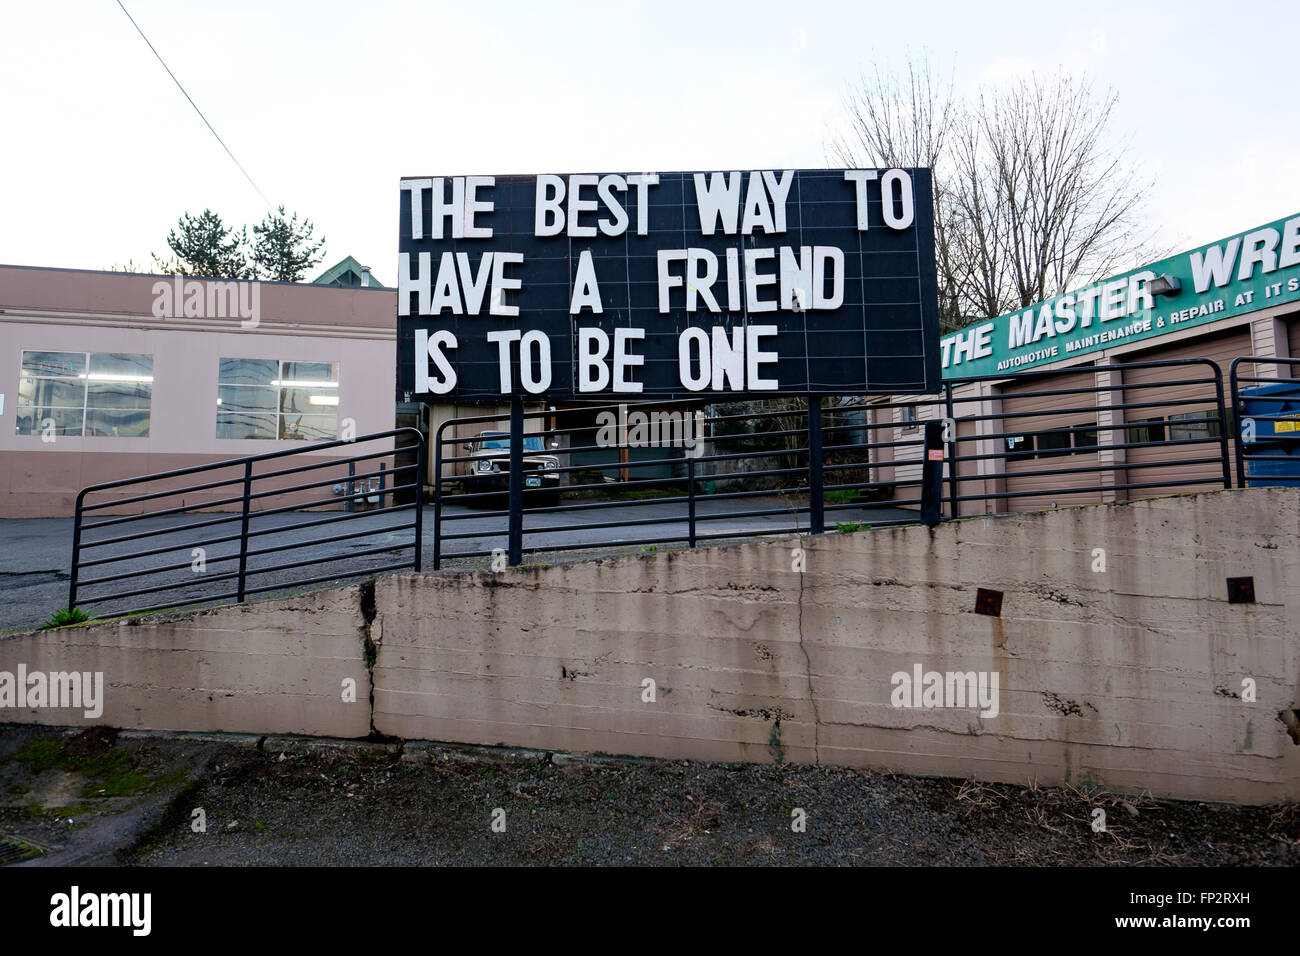 PORTLAND, OR - Febrero 27, 2016: Lector junta un letrero indica que la mejor manera de tener un amigo es ser uno. Foto de stock